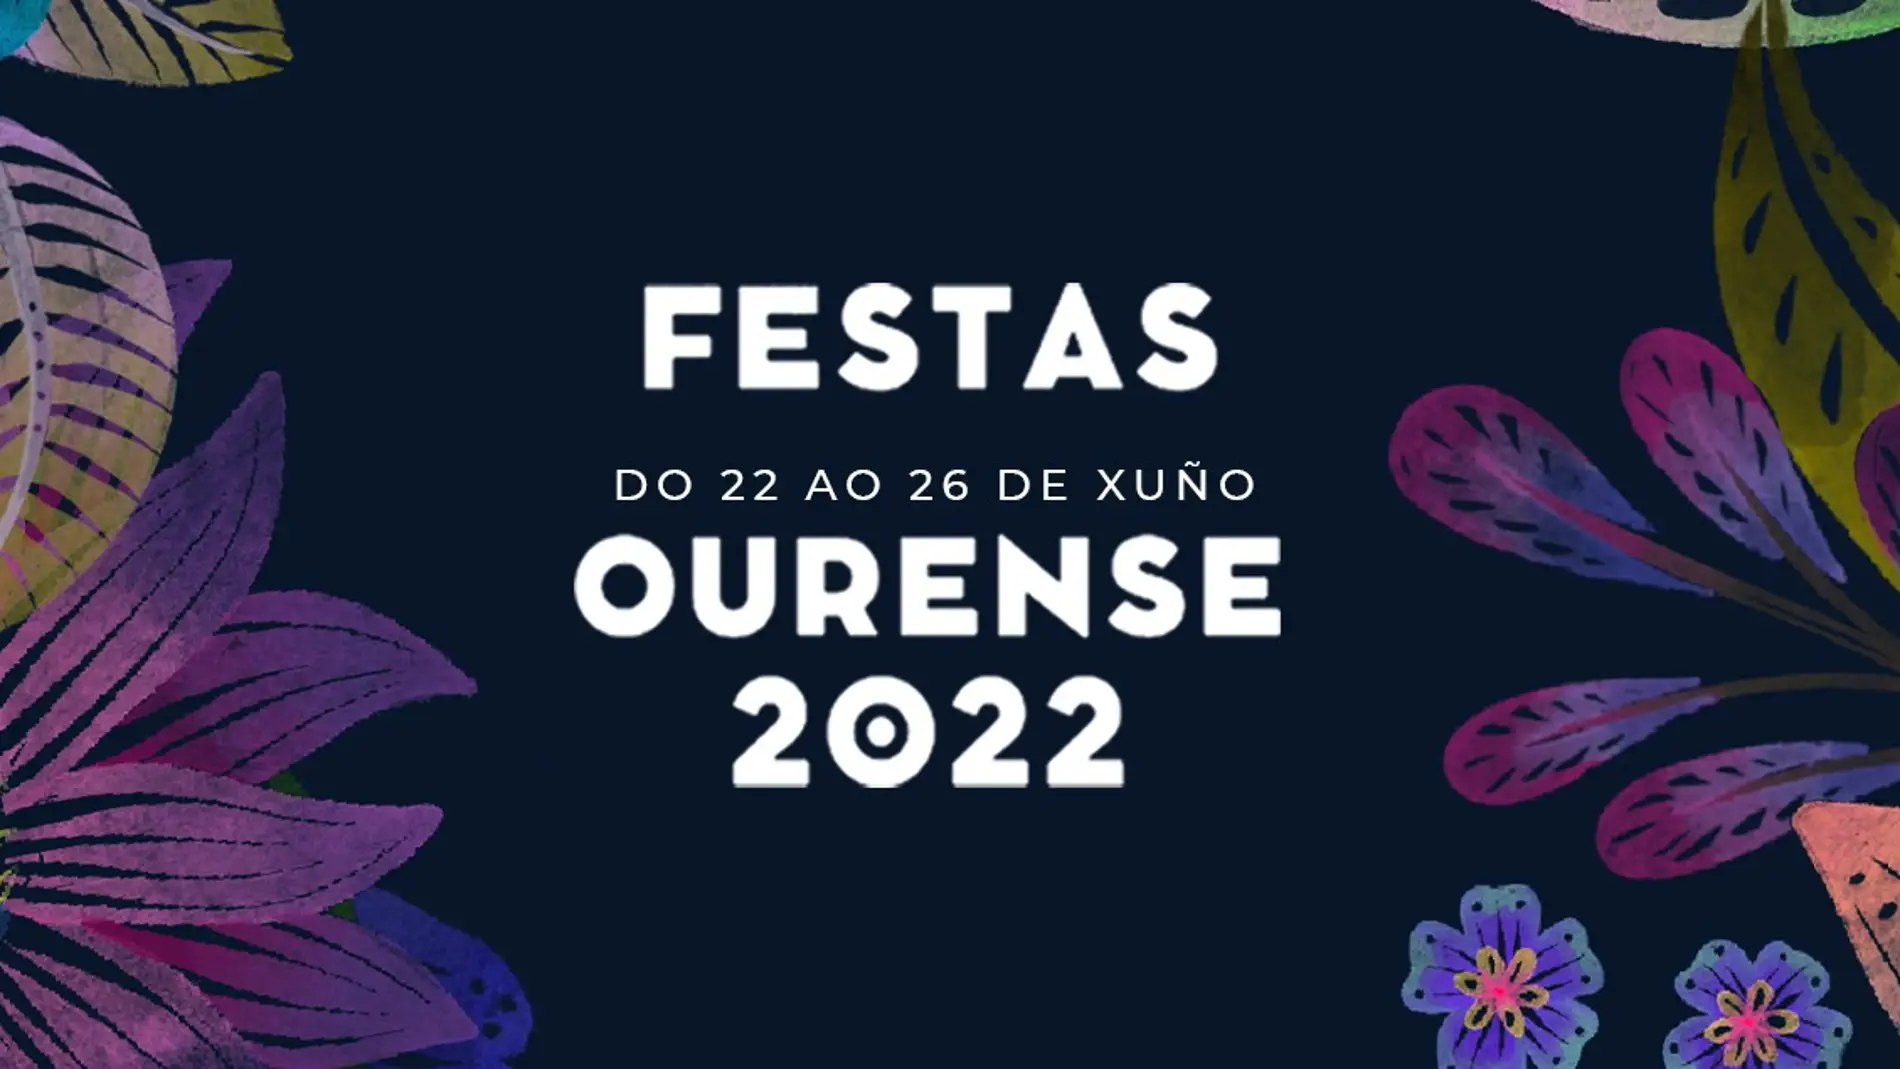 Do mércores 22 ao domingo 26 de xuño o Concello de Ourense celebra as súas festas